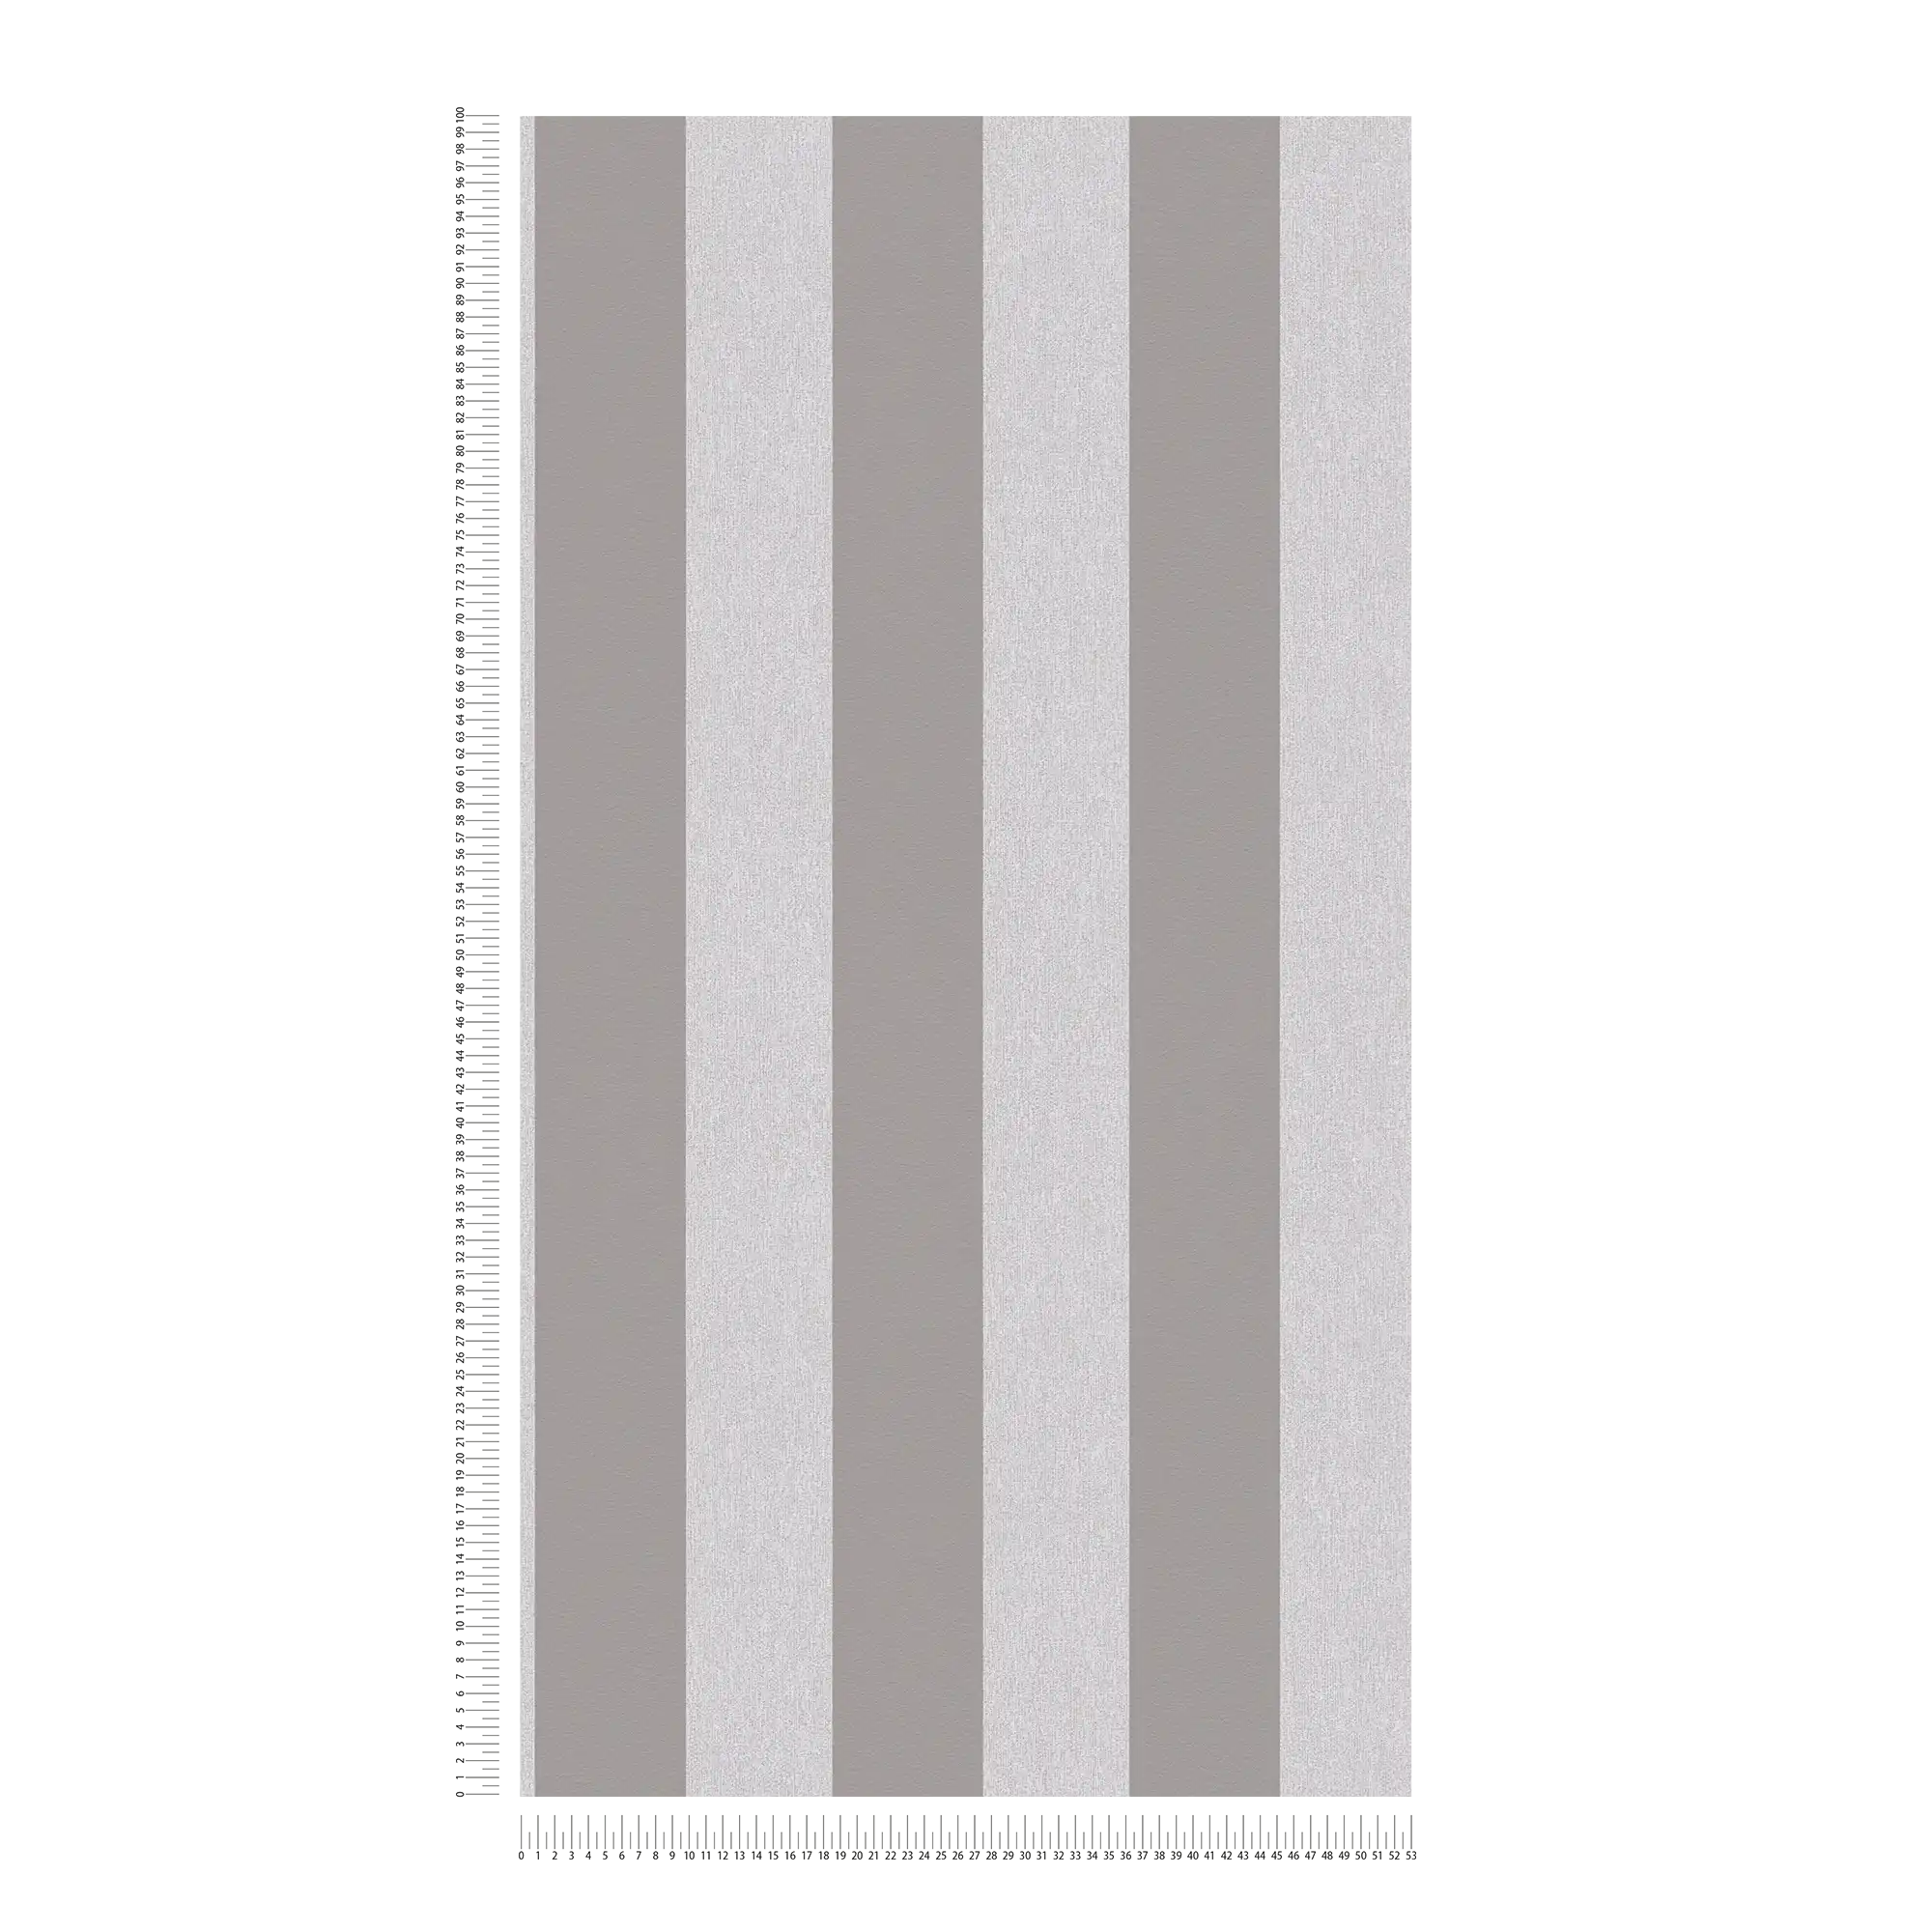             Tapete mit Strukturoptik & Streifen Muster – Grau, Hellgrau
        